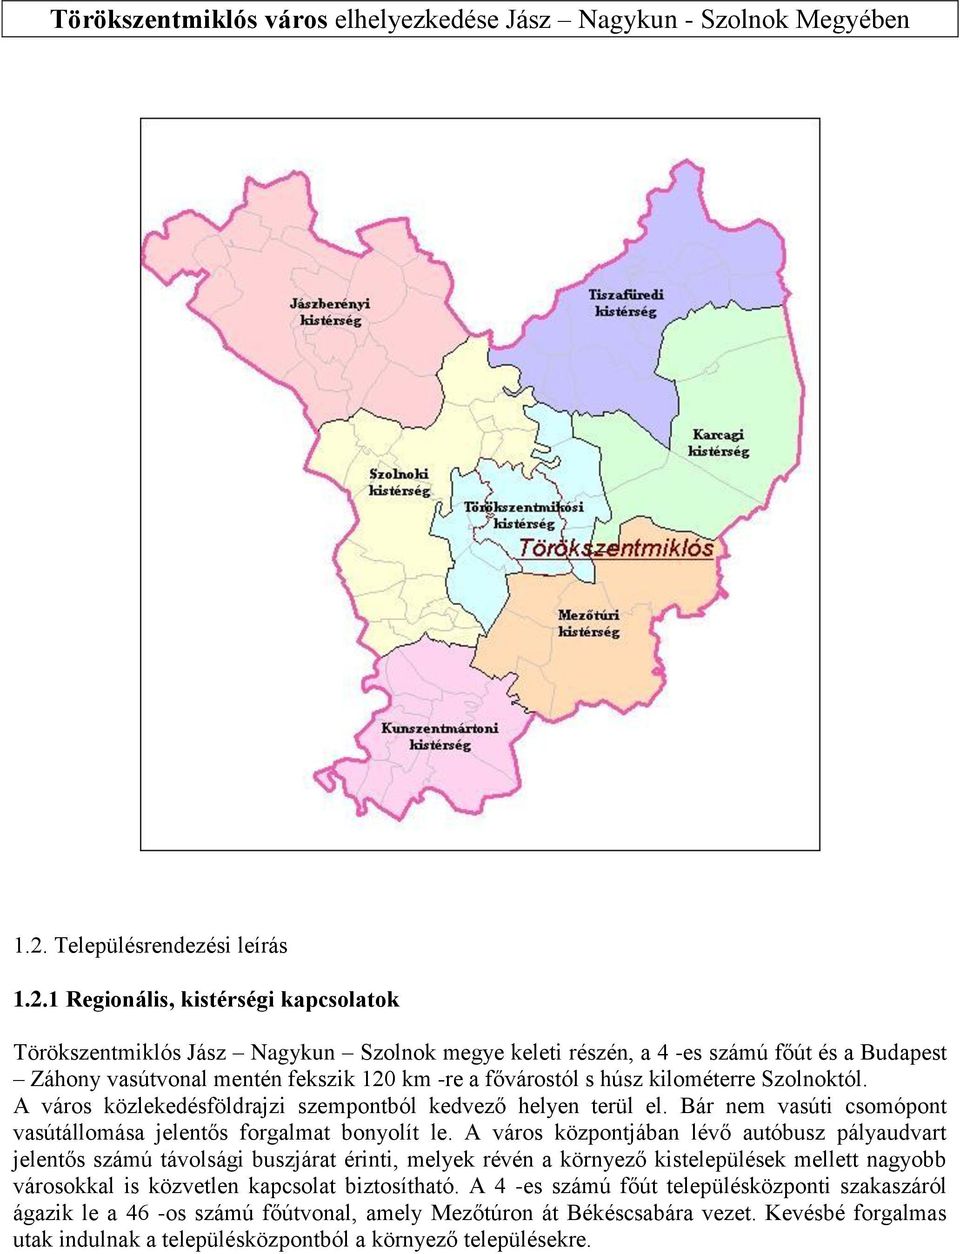 1 Regionális, kistérségi kapcsolatok Törökszentmiklós Jász Nagykun Szolnok megye keleti részén, a 4 -es számú főút és a Budapest Záhony vasútvonal mentén fekszik 120 km -re a fővárostól s húsz